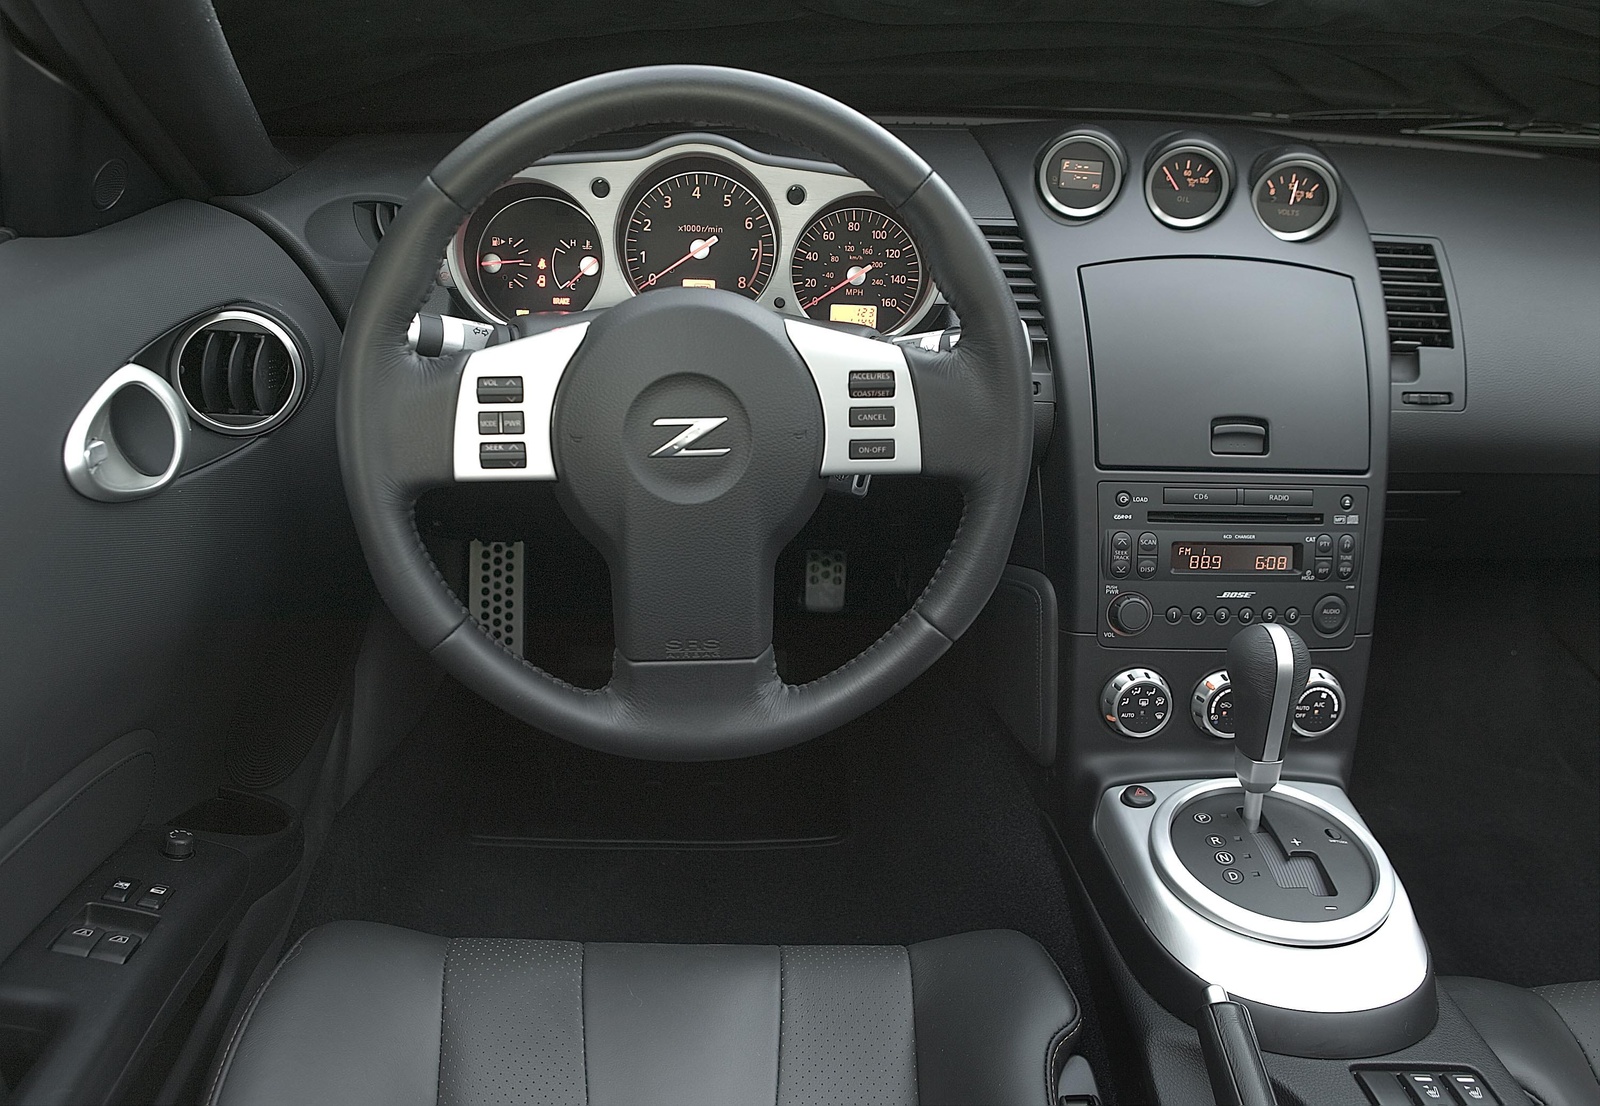 2006 Nissan 350z interior photos #3